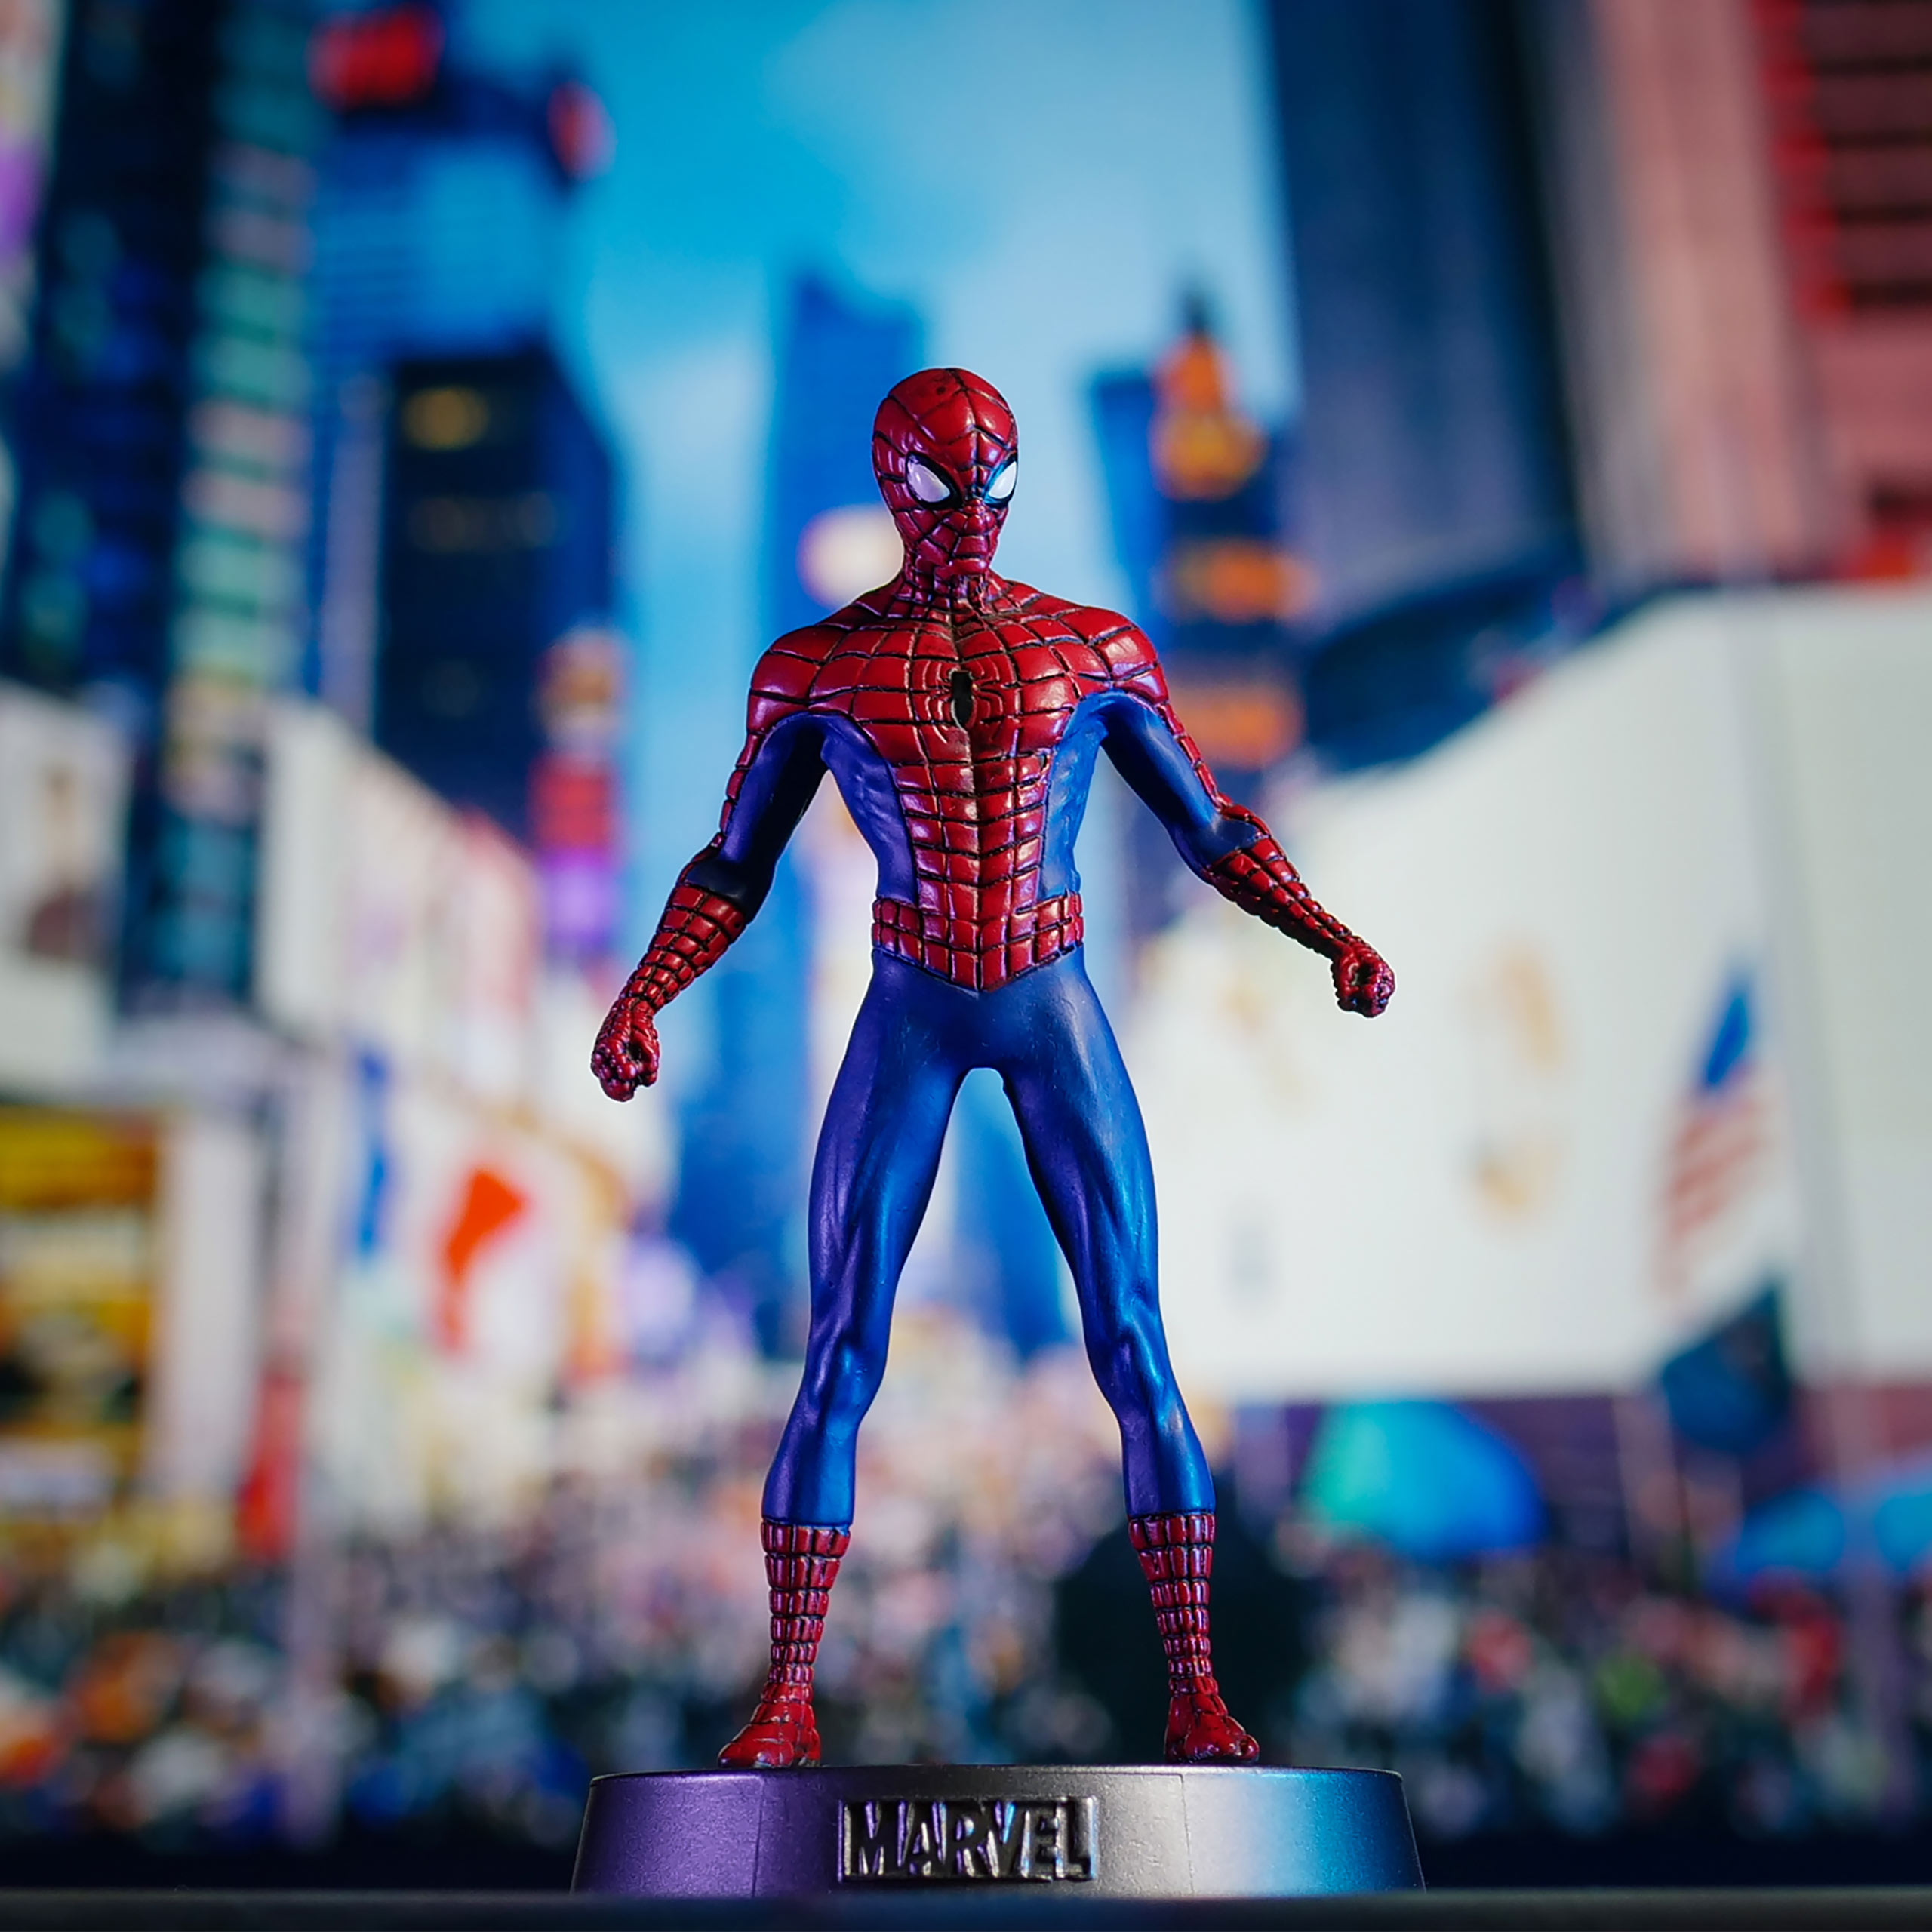 Spider-Man - Heavyweights Metall Figur in Sammlerdose